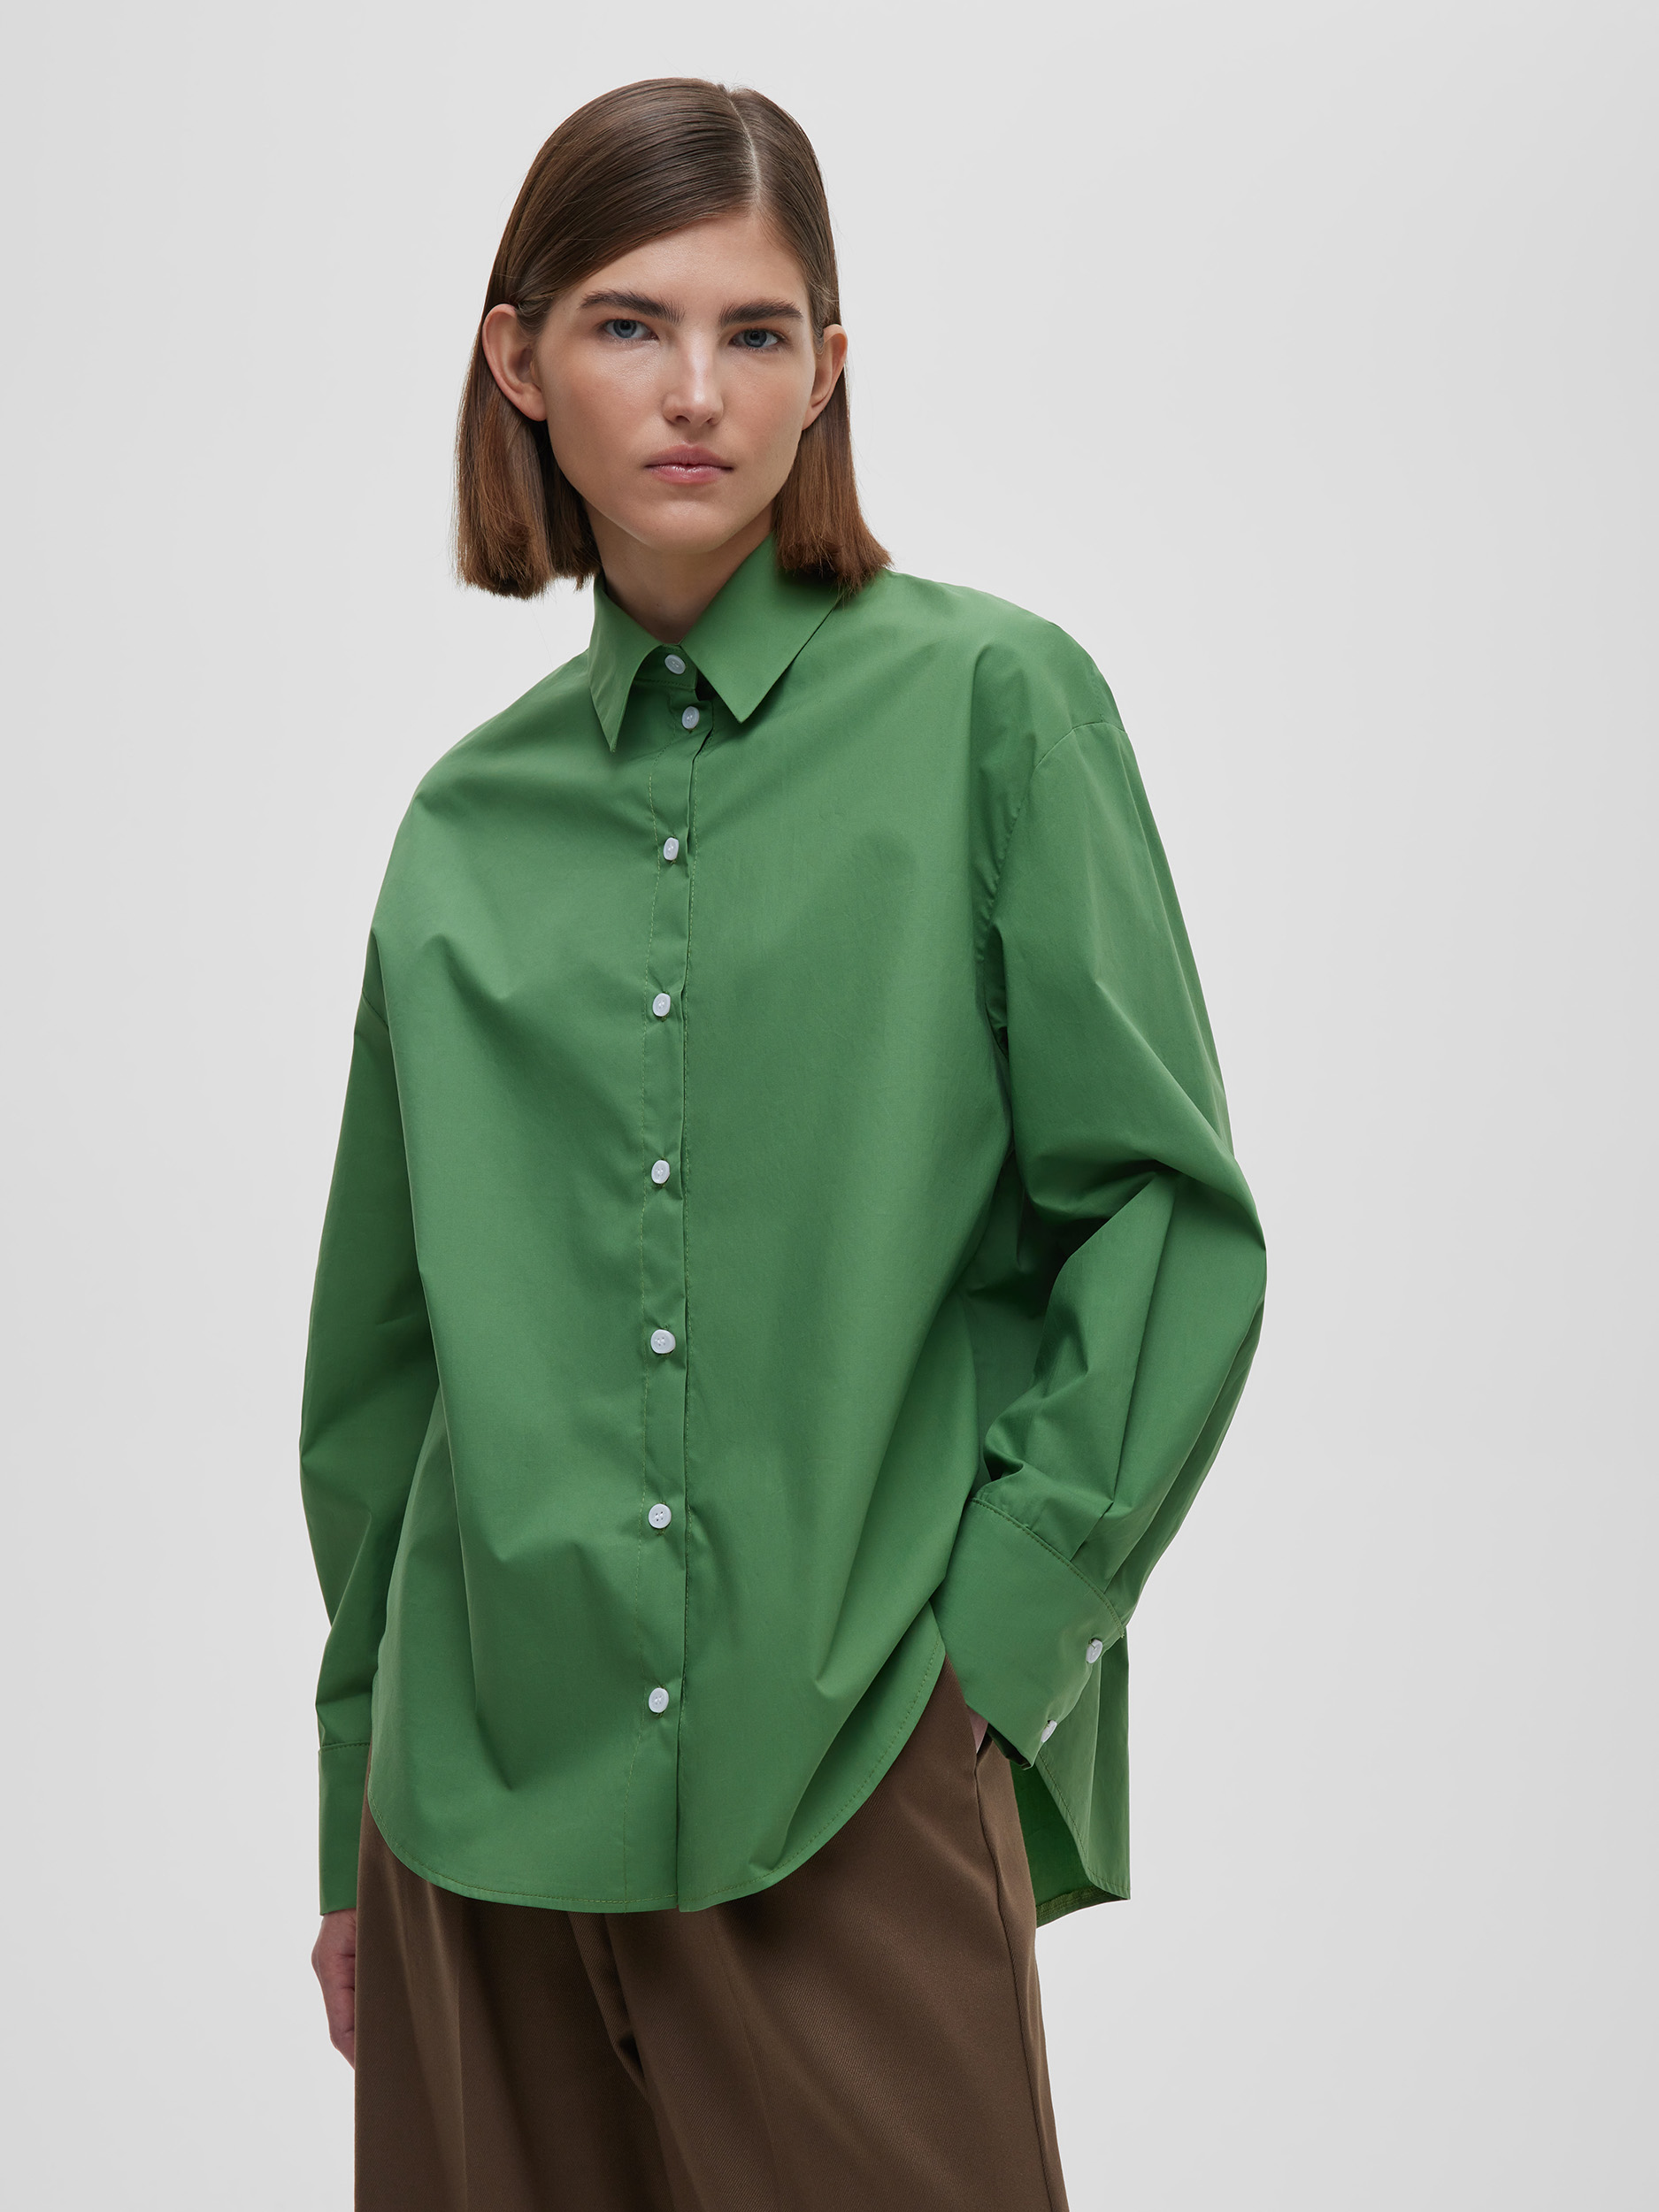 Рубашка женская свободная из хлопка, цвет – зеленый рубашка свободного кроя с длинным рукавом